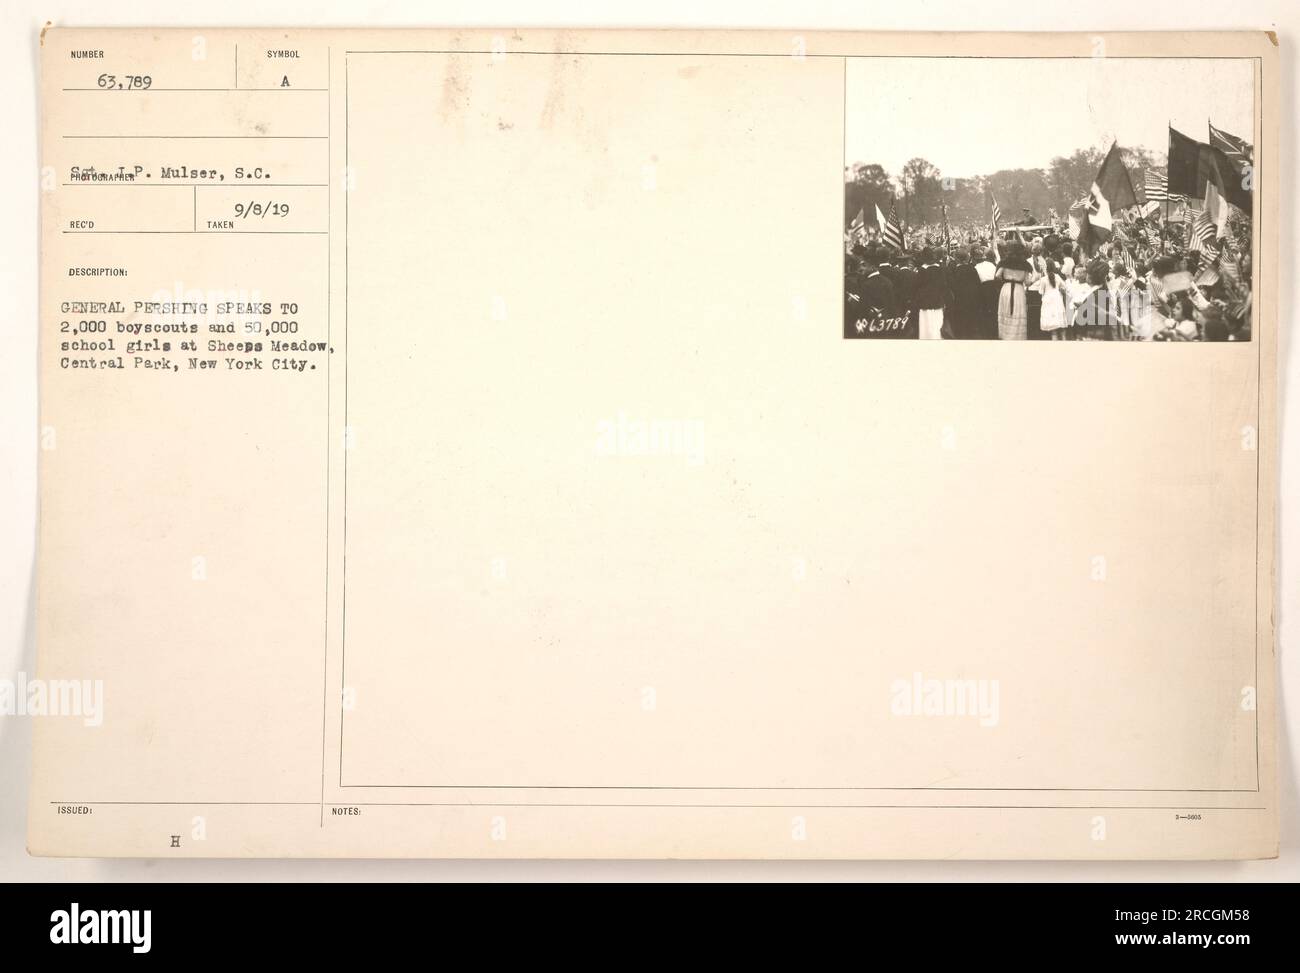 General Pershing spricht am 8. September 1919 in Sheeps Meadow im Central Park, New York City, vor einer großen Menge von 2.000 Pfadfindern und 50.000 Schulmädchen. Die Veranstaltung zog insgesamt 63.789 Besucher an. Farin Mulser, S.C. machte ein Foto von diesem Ereignis In der Beschreibung wird auch erwähnt, dass 23784 Notizen zu diesem Ereignis gemacht wurden. Stockfoto